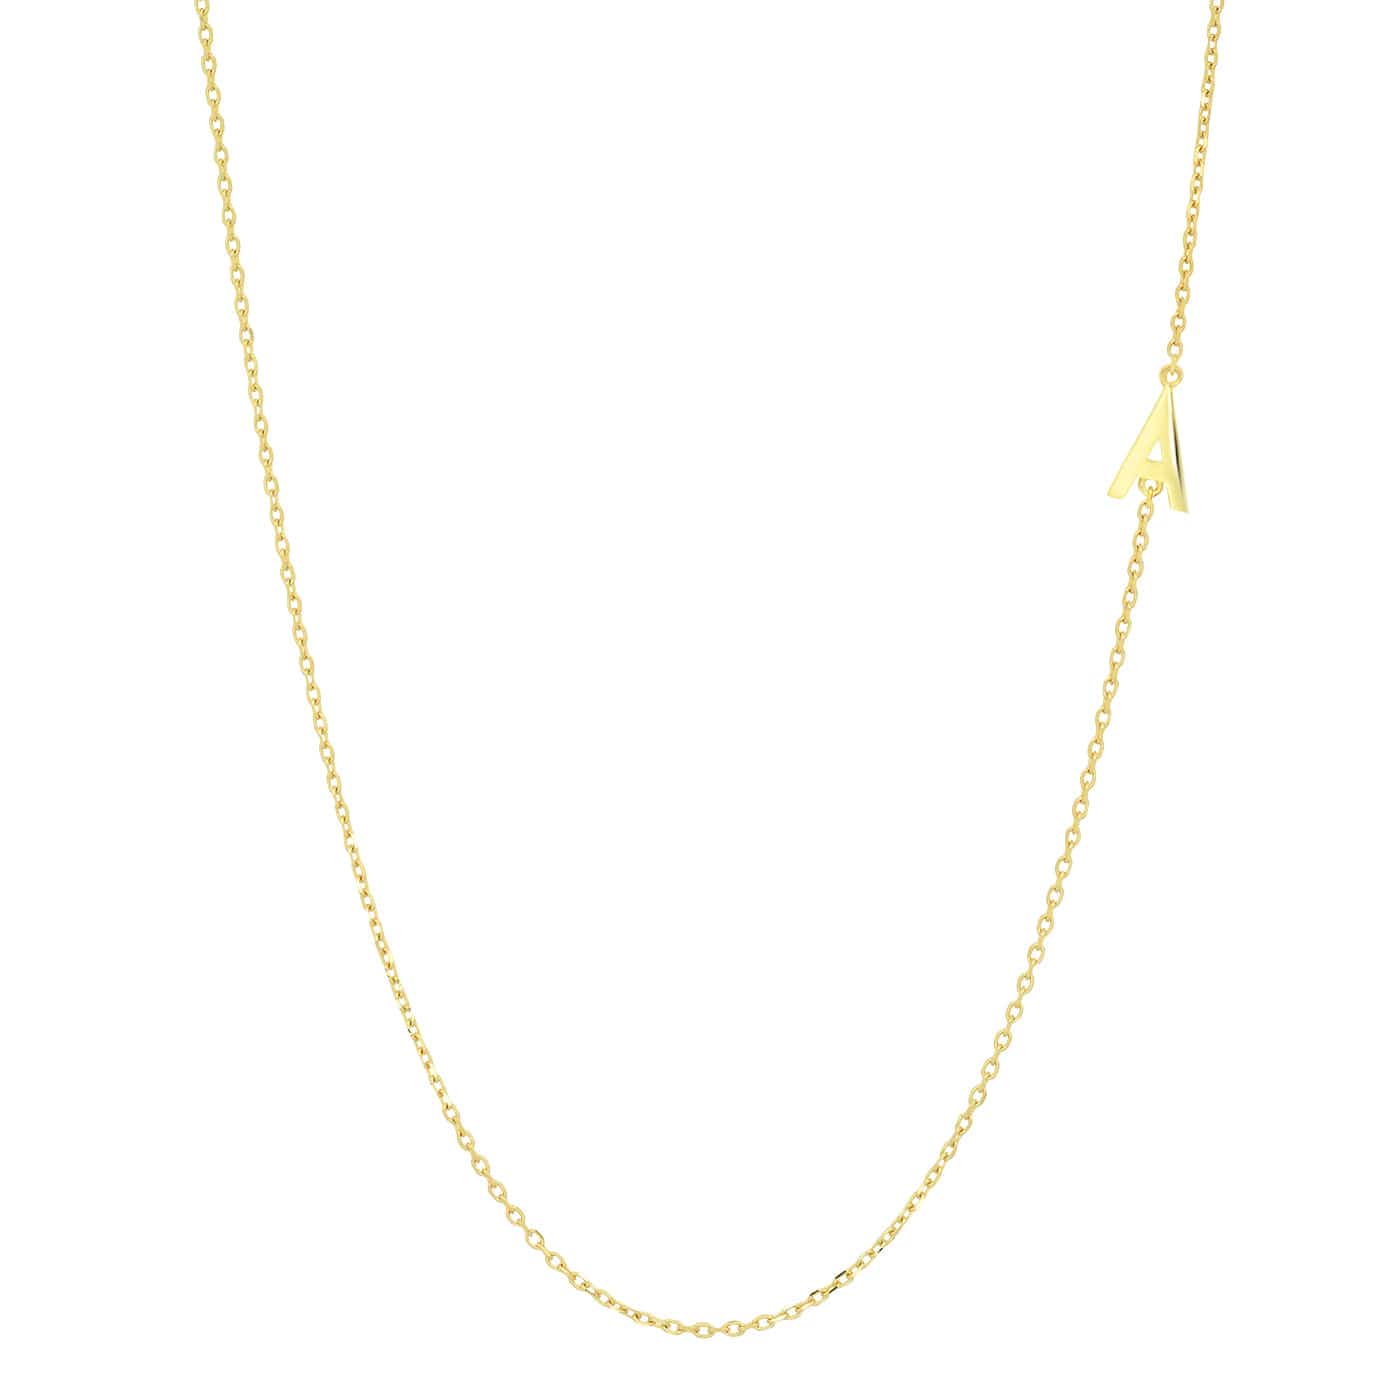 TAI JEWELRY Necklace A 14k Sideways Monogram Necklace